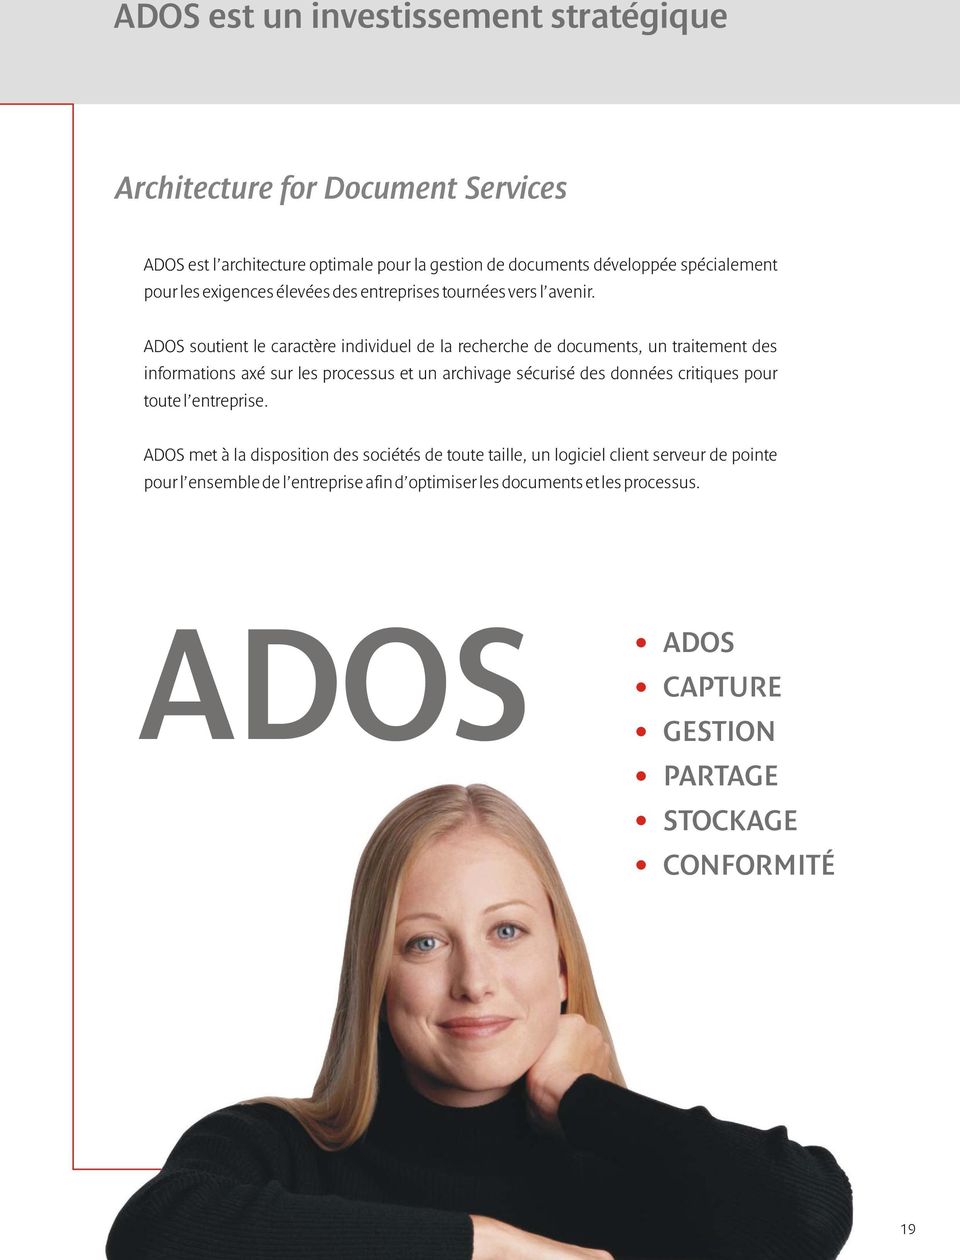 ADOS soutient le caractère individuel de la recherche de documents, un traitement des informations axé sur les processus et un archivage sécurisé des données